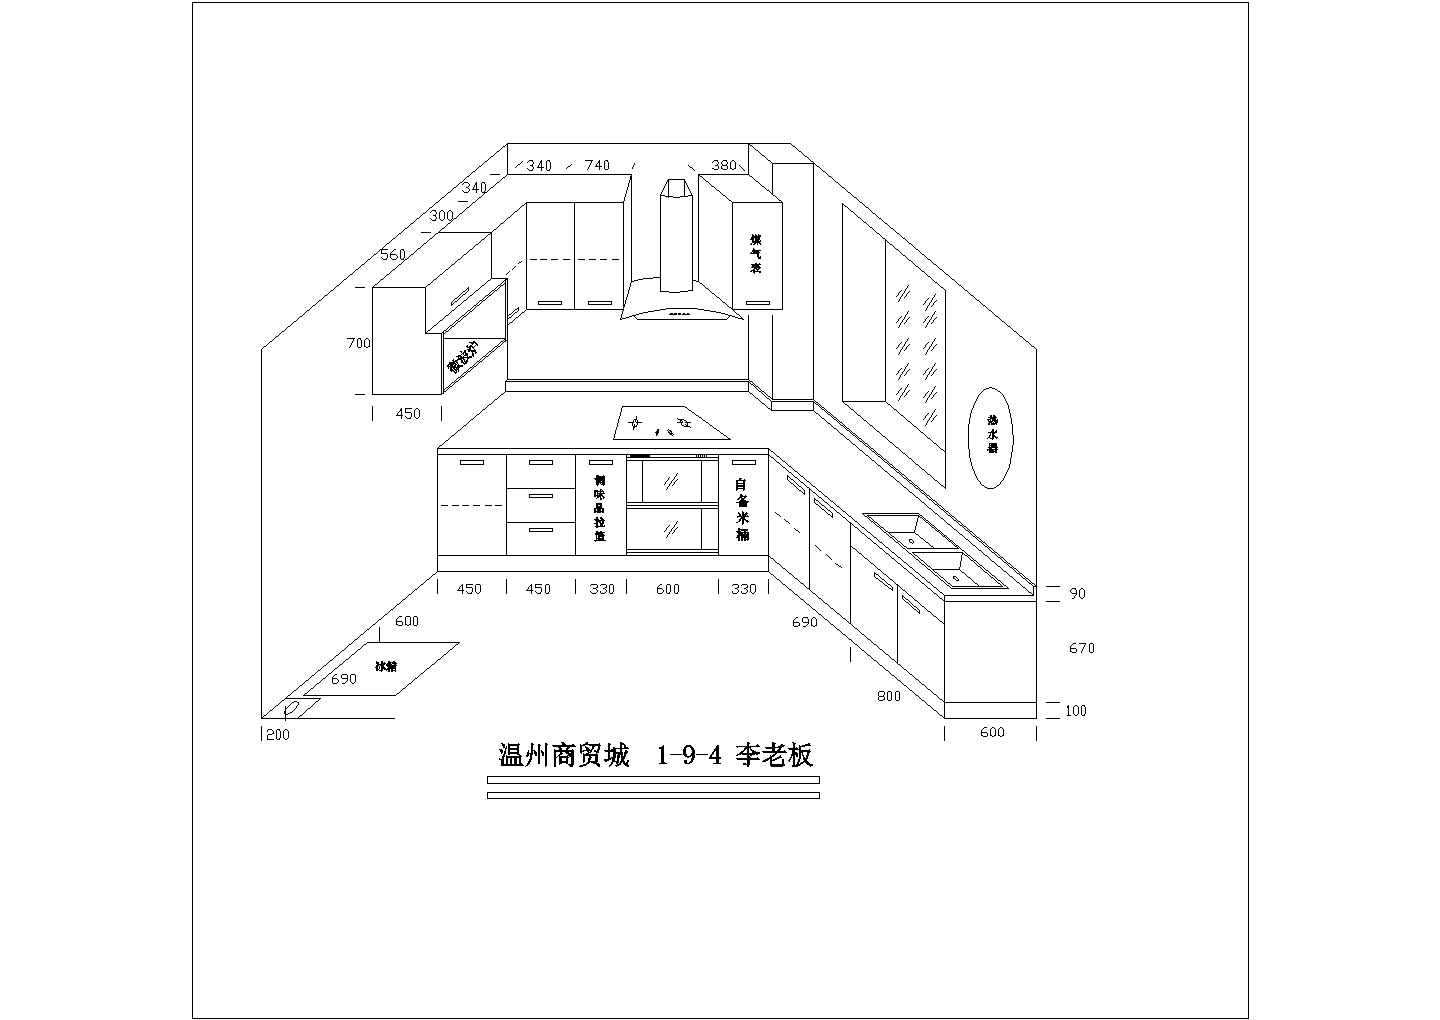 欧派橱柜装修厨房立体装修设计cad方案施工图